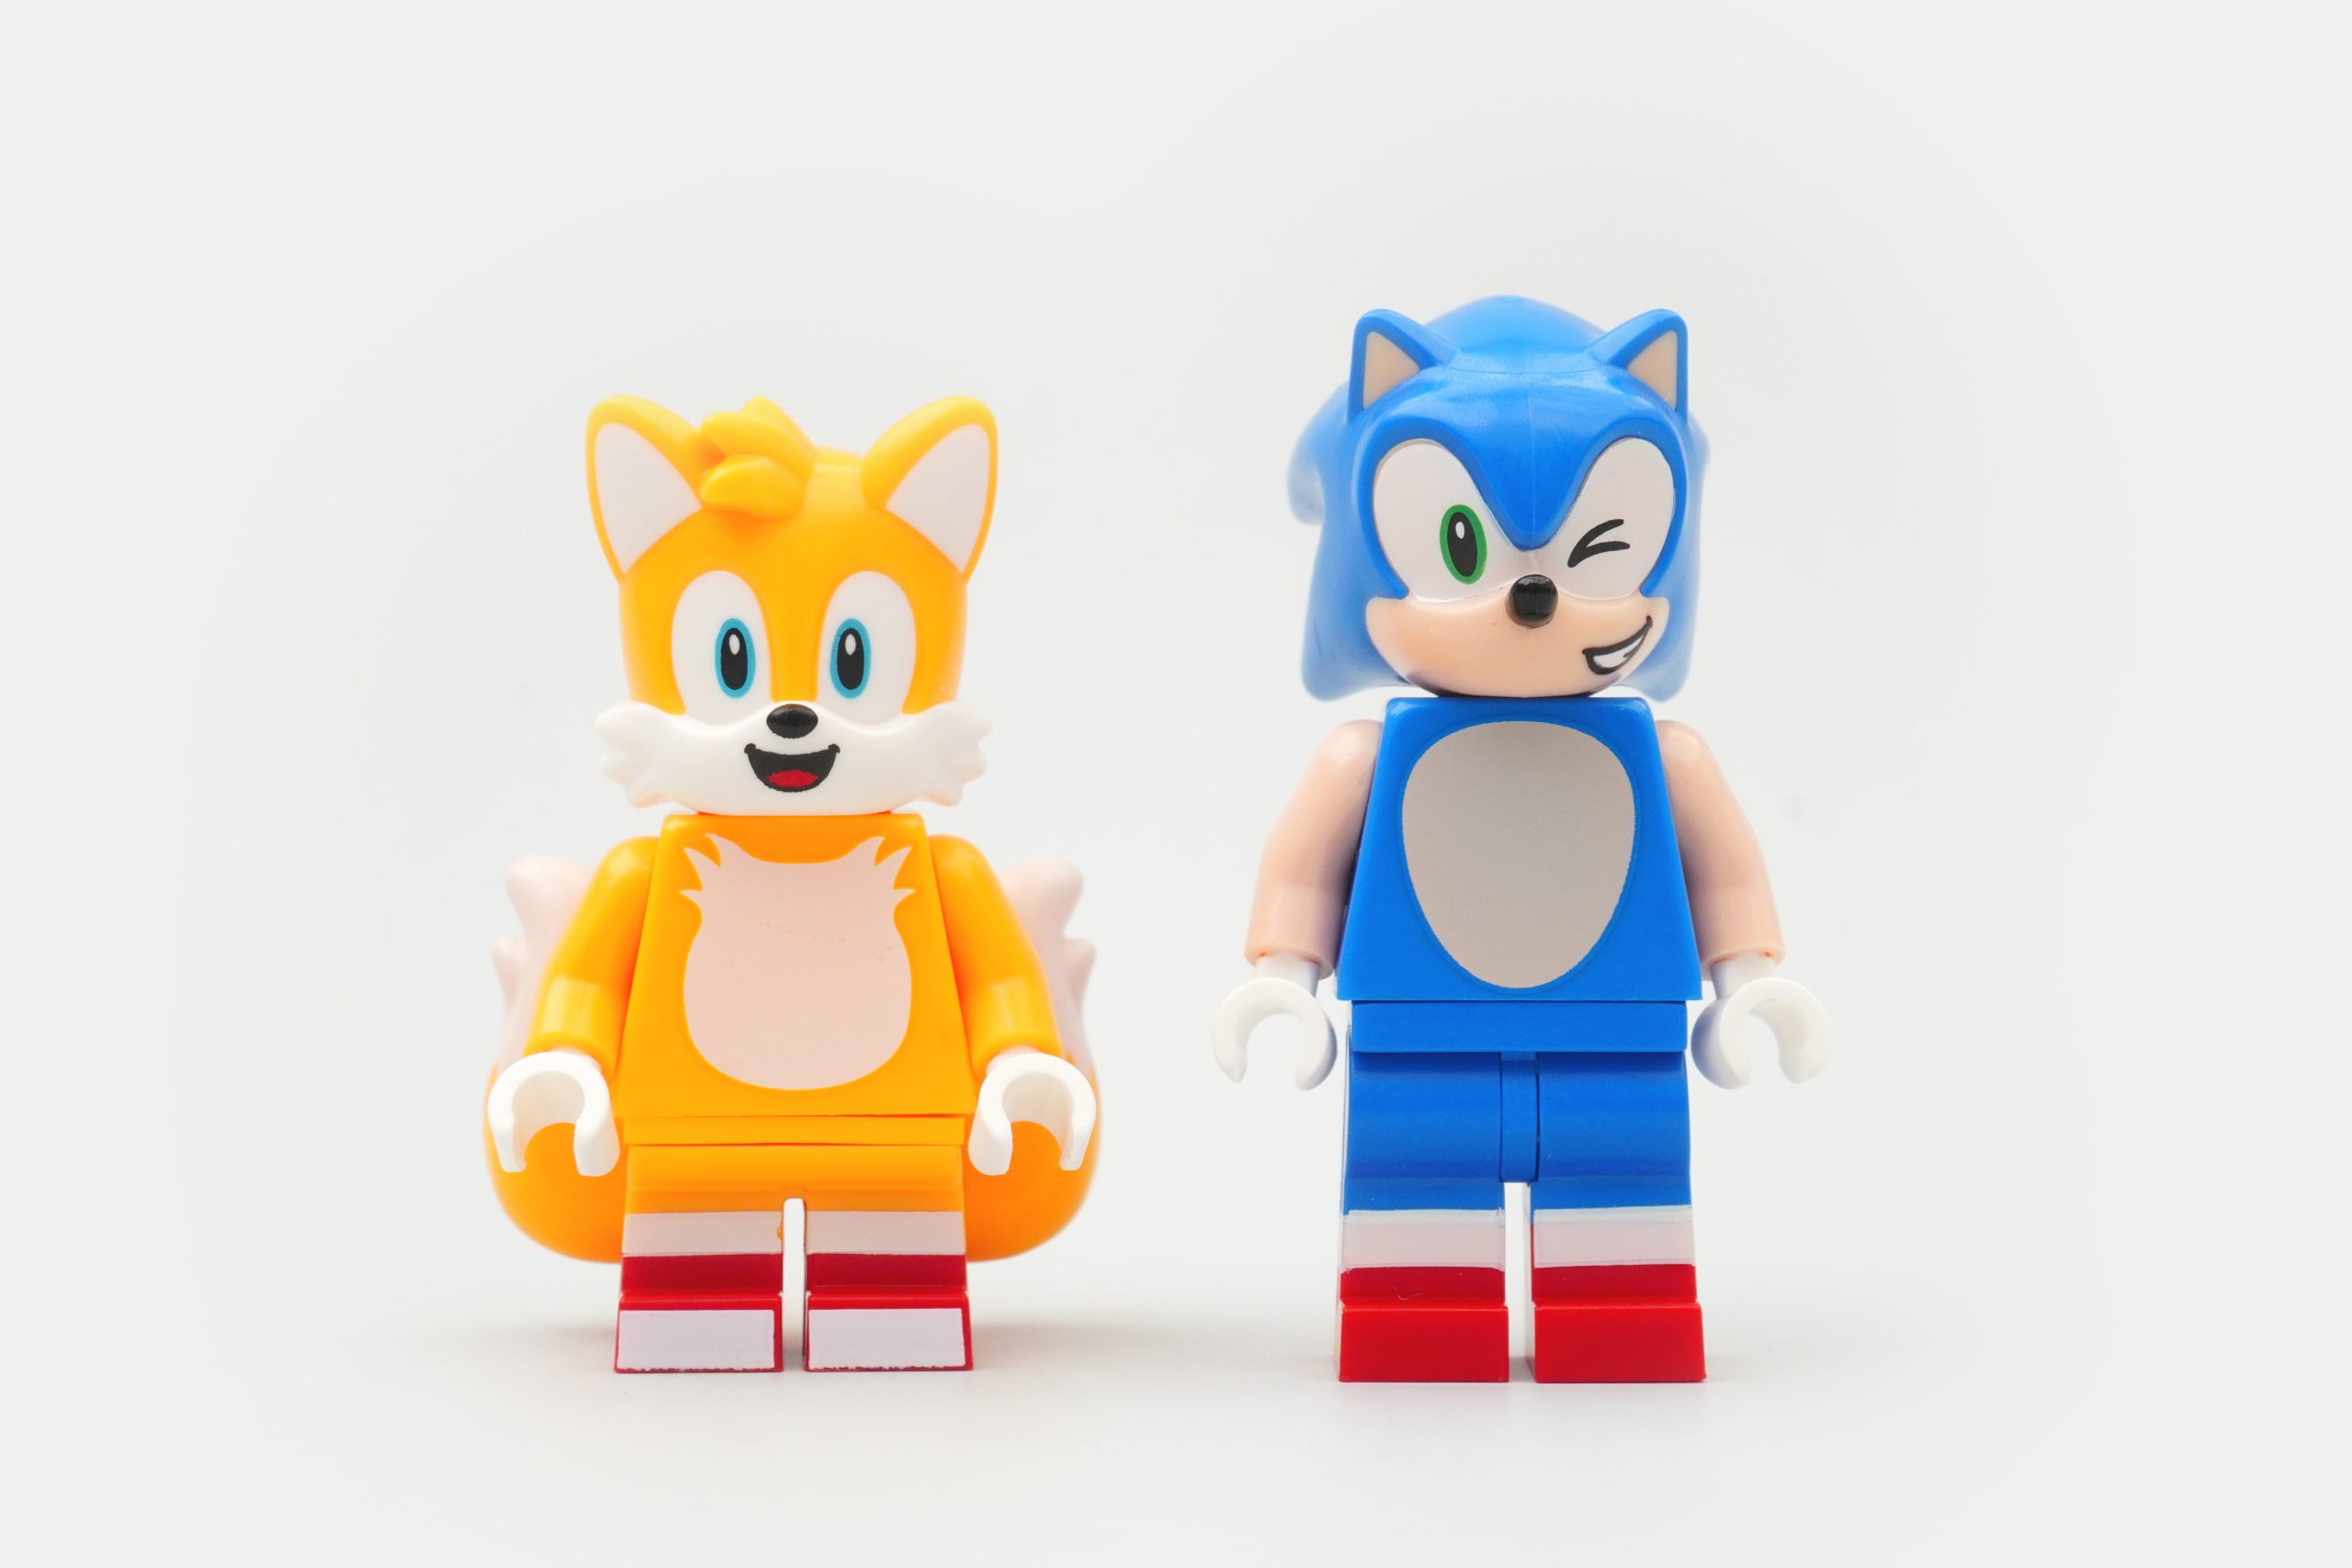 Lego Sonic THE Hedgehog Oficina do Tails e Aviao Tornado 76991